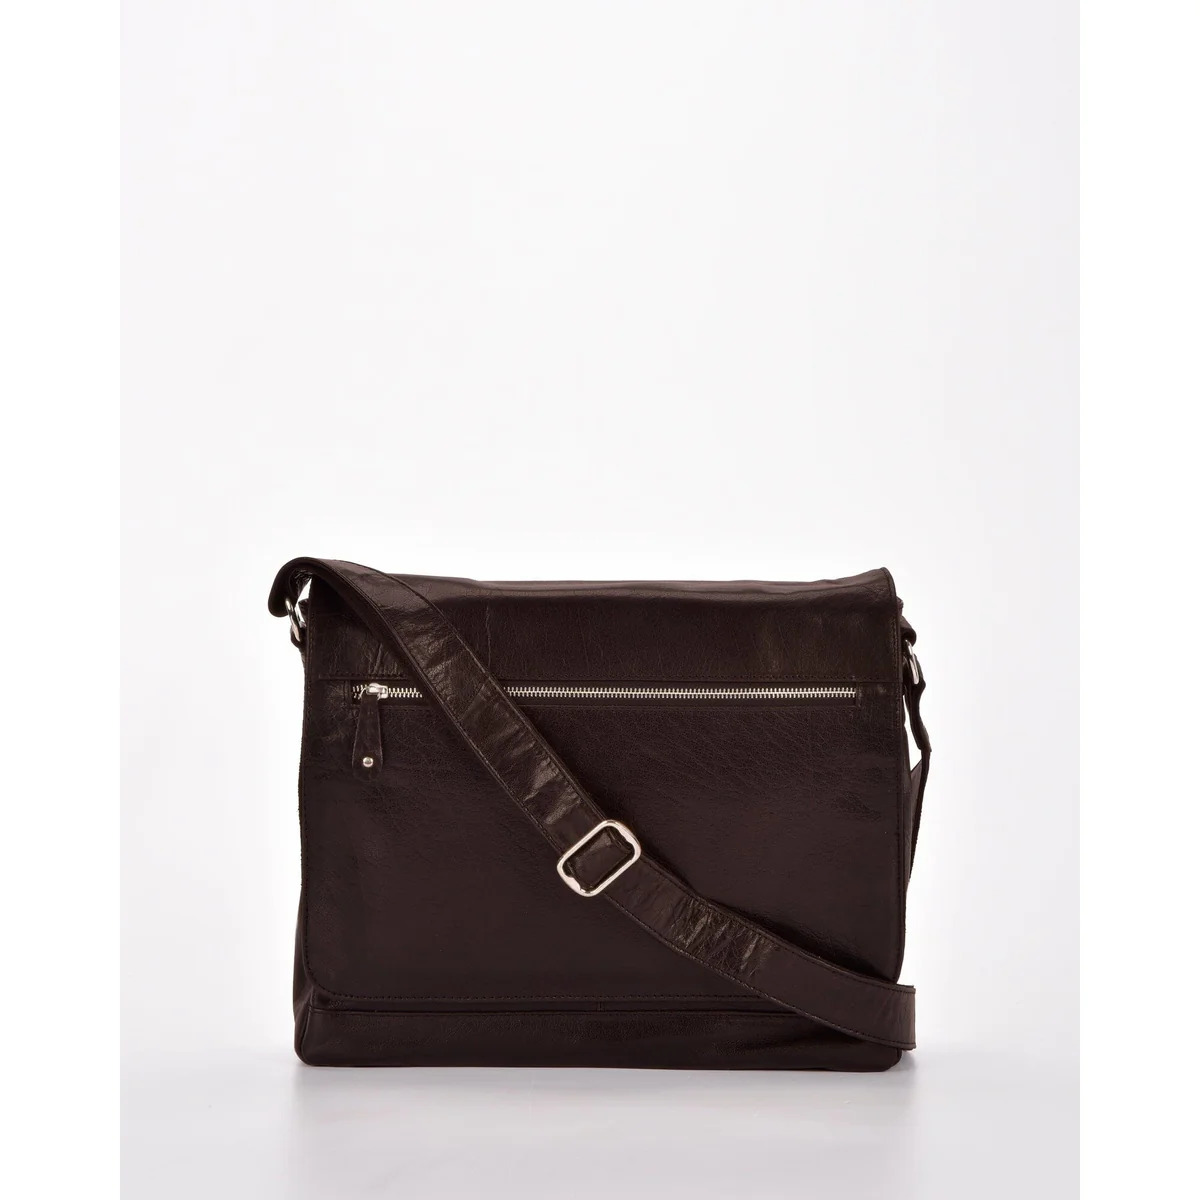 Men Genuine Leather Business Briefcase Handbag Laptop Shoulder Messenger Bag